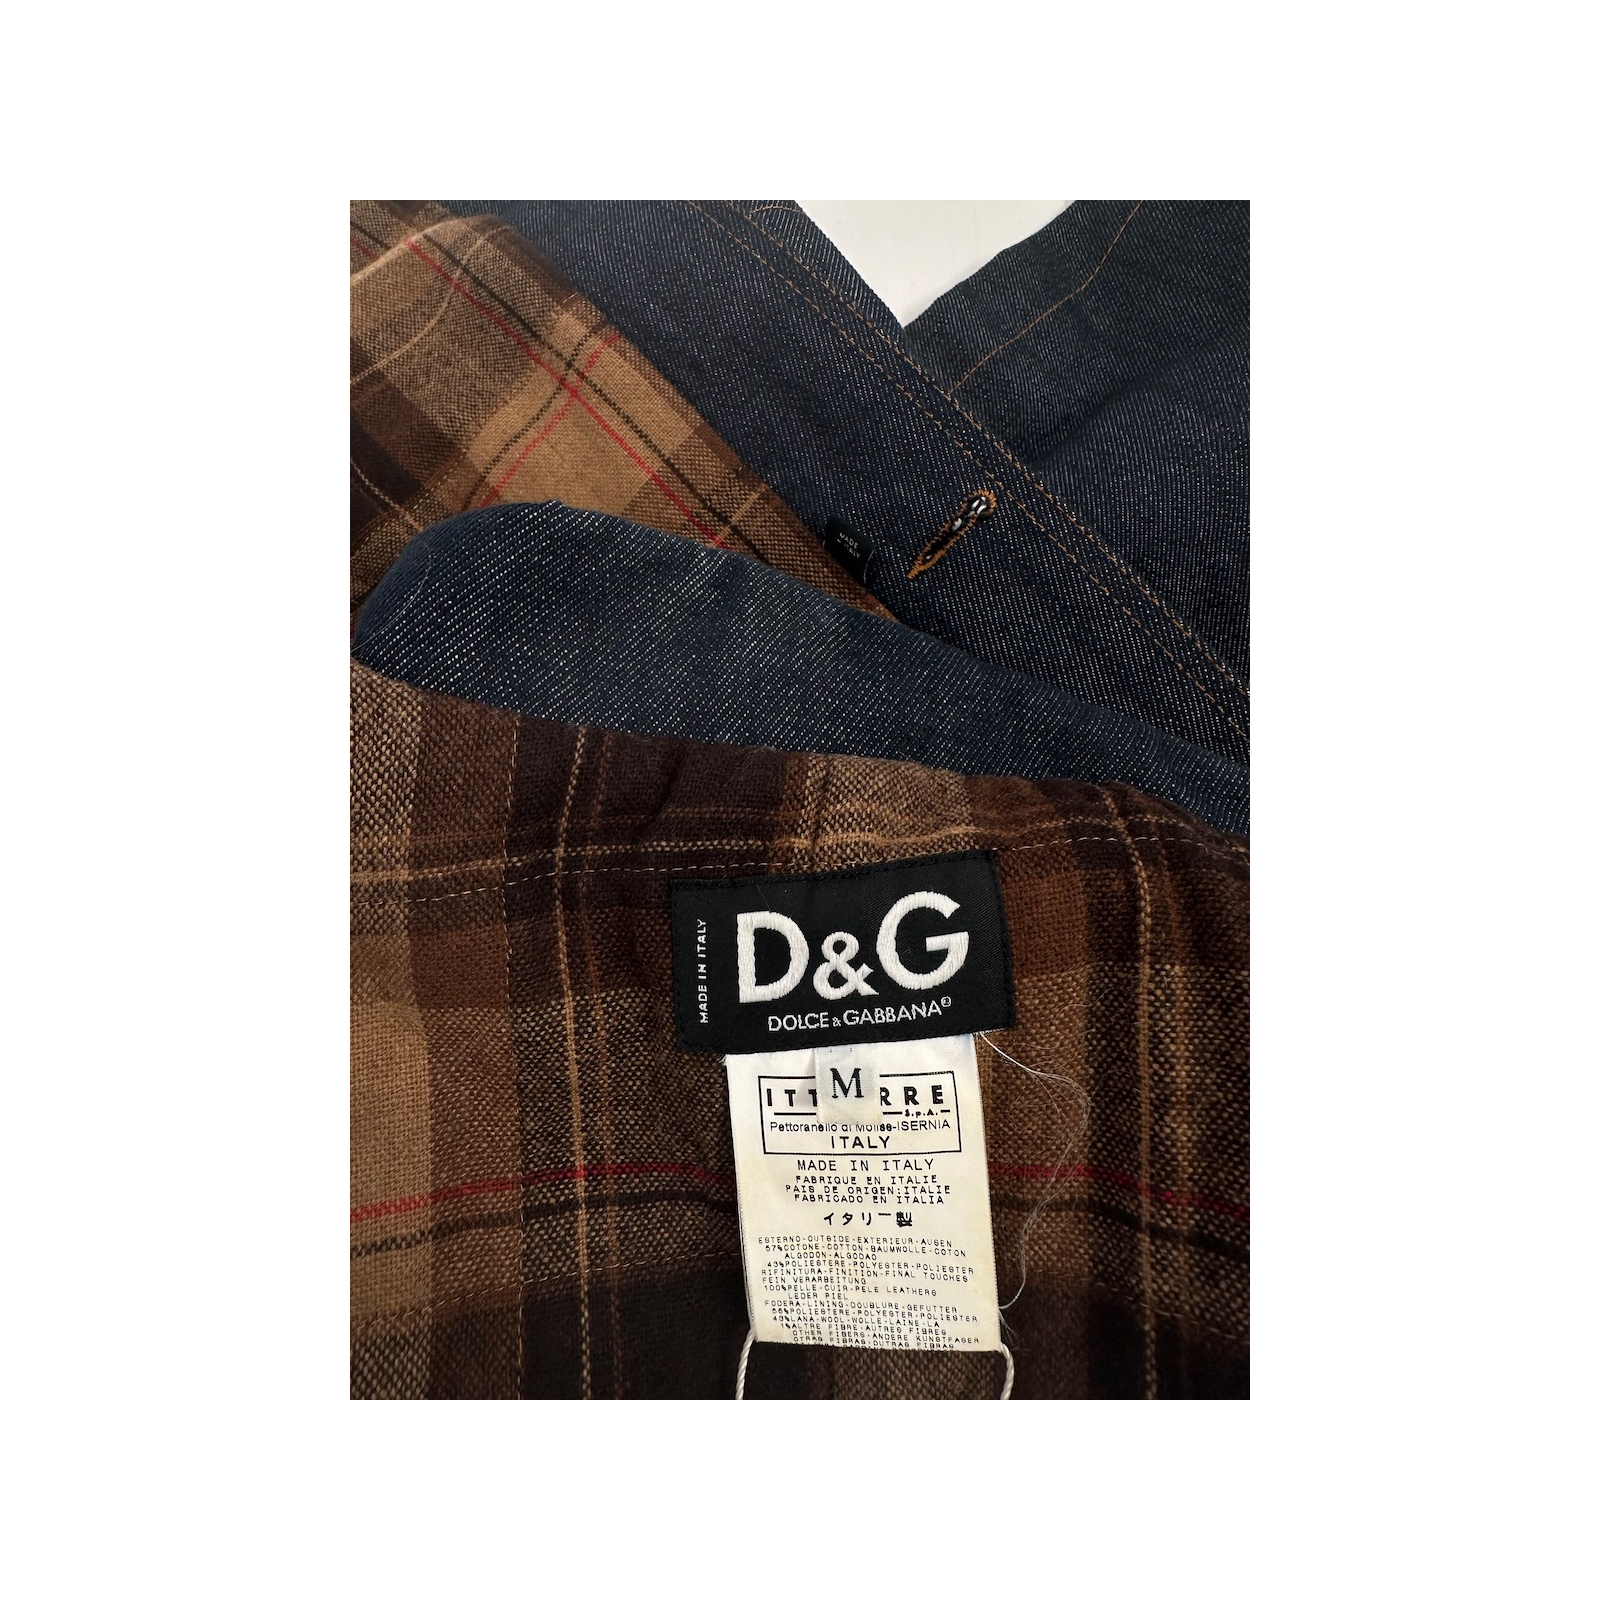 D&G jeansowy płaszcz